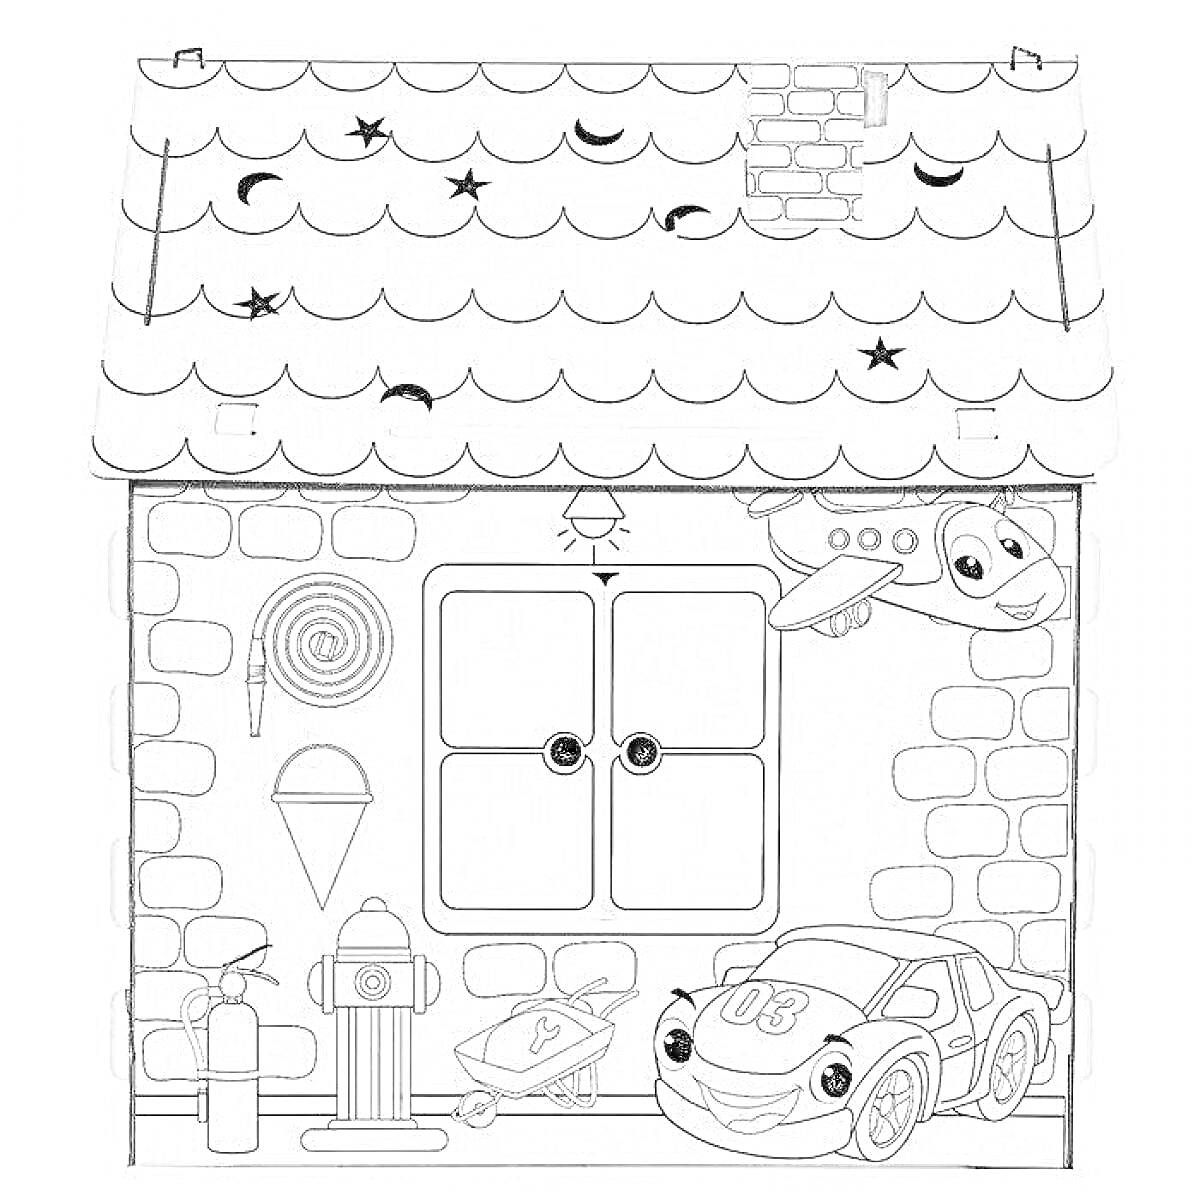 Картонный домик с черепичной крышей, окнами с цветочными ставнями, самолетом, машиной, пожарным гидрантом, фонарем, мороженым и кольцевой спиралью